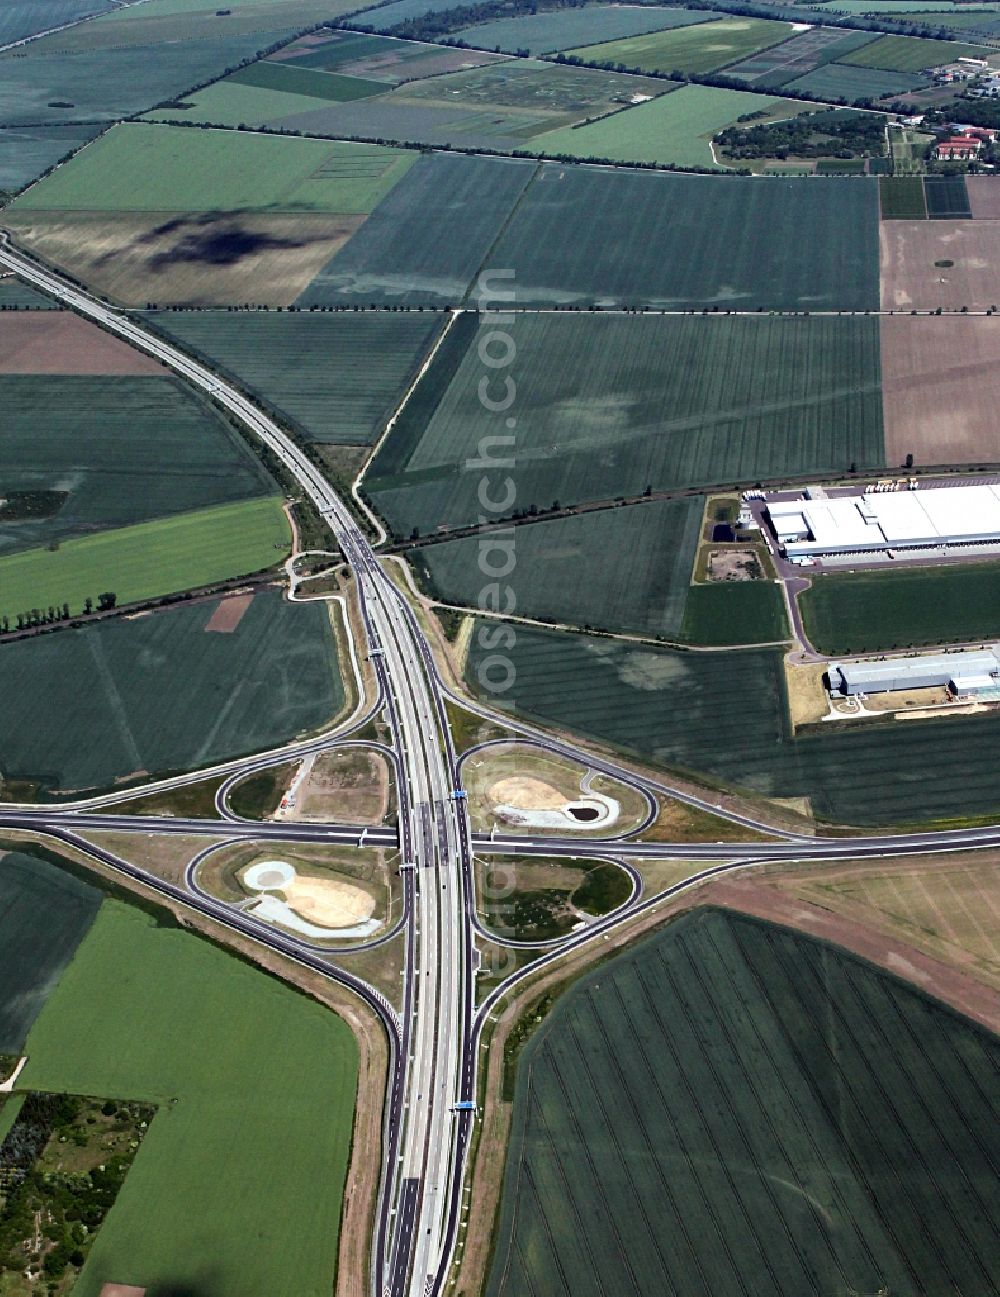 Ilberstedt from above - Highway interchange near Ilberstedt in Saxony Anhalt